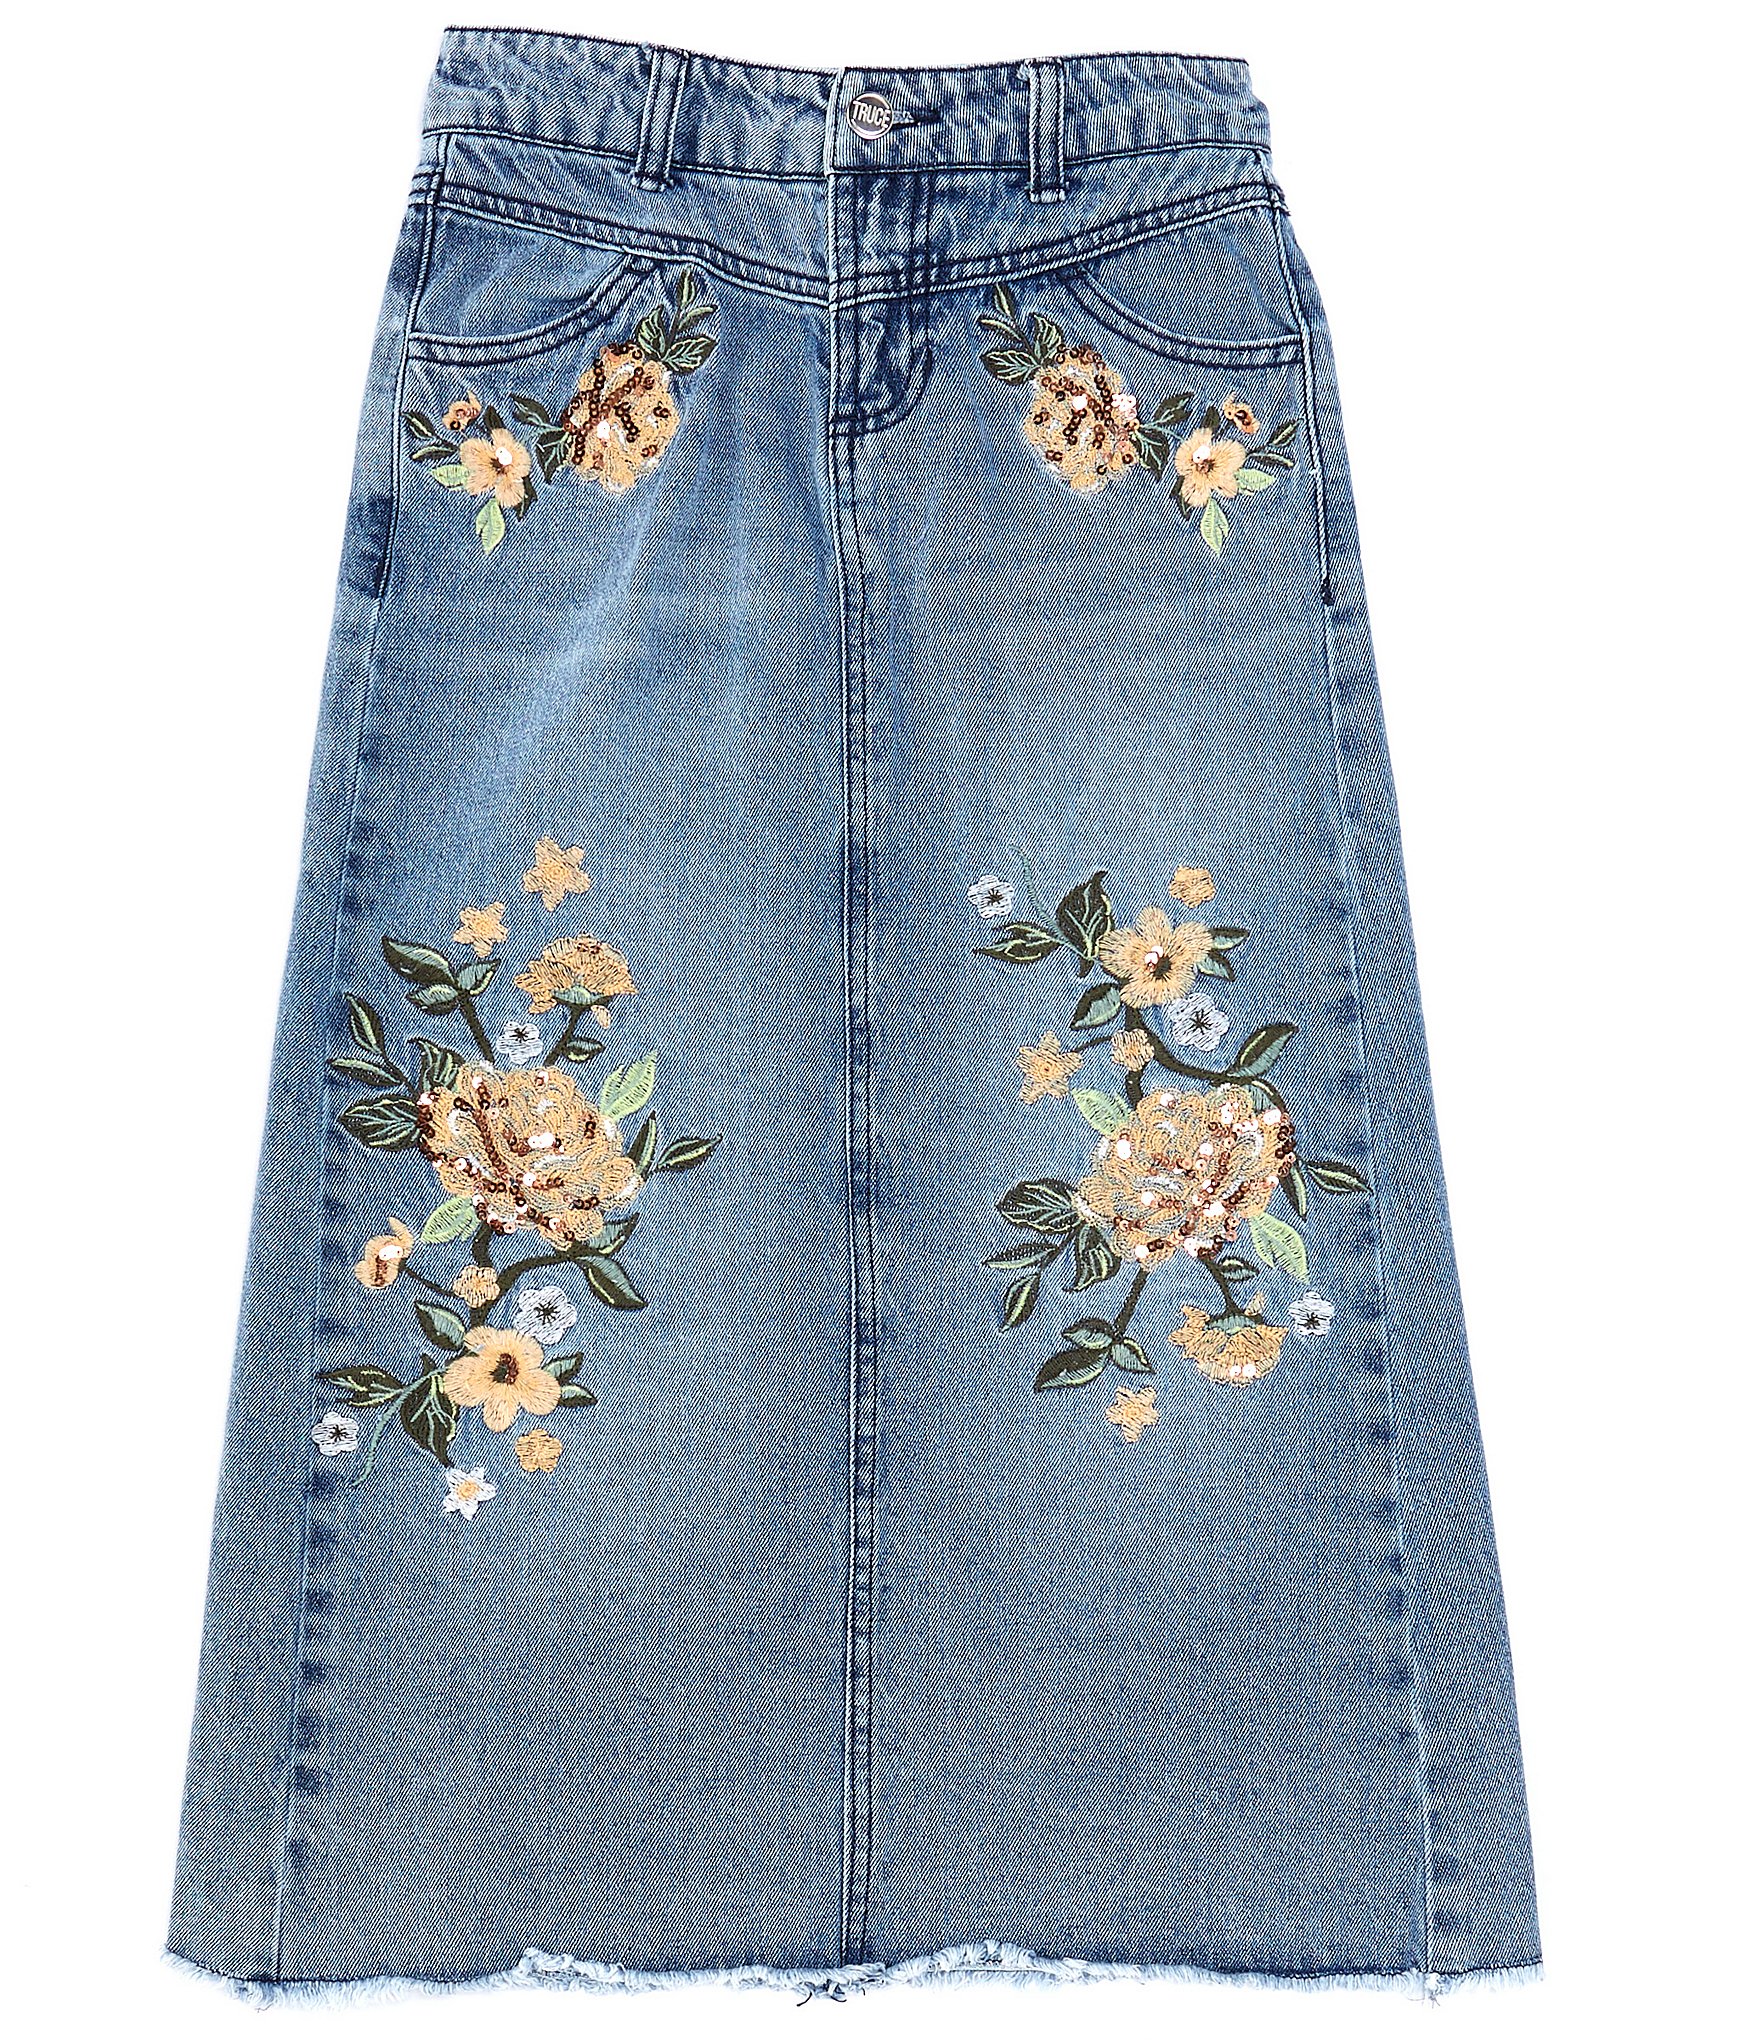 June Women's High Waist Denim Ruffle Skirt, Knee-Length Fishtail Jean Skirt  for Juniors | Juniors skirts, Skirts, High waisted denim